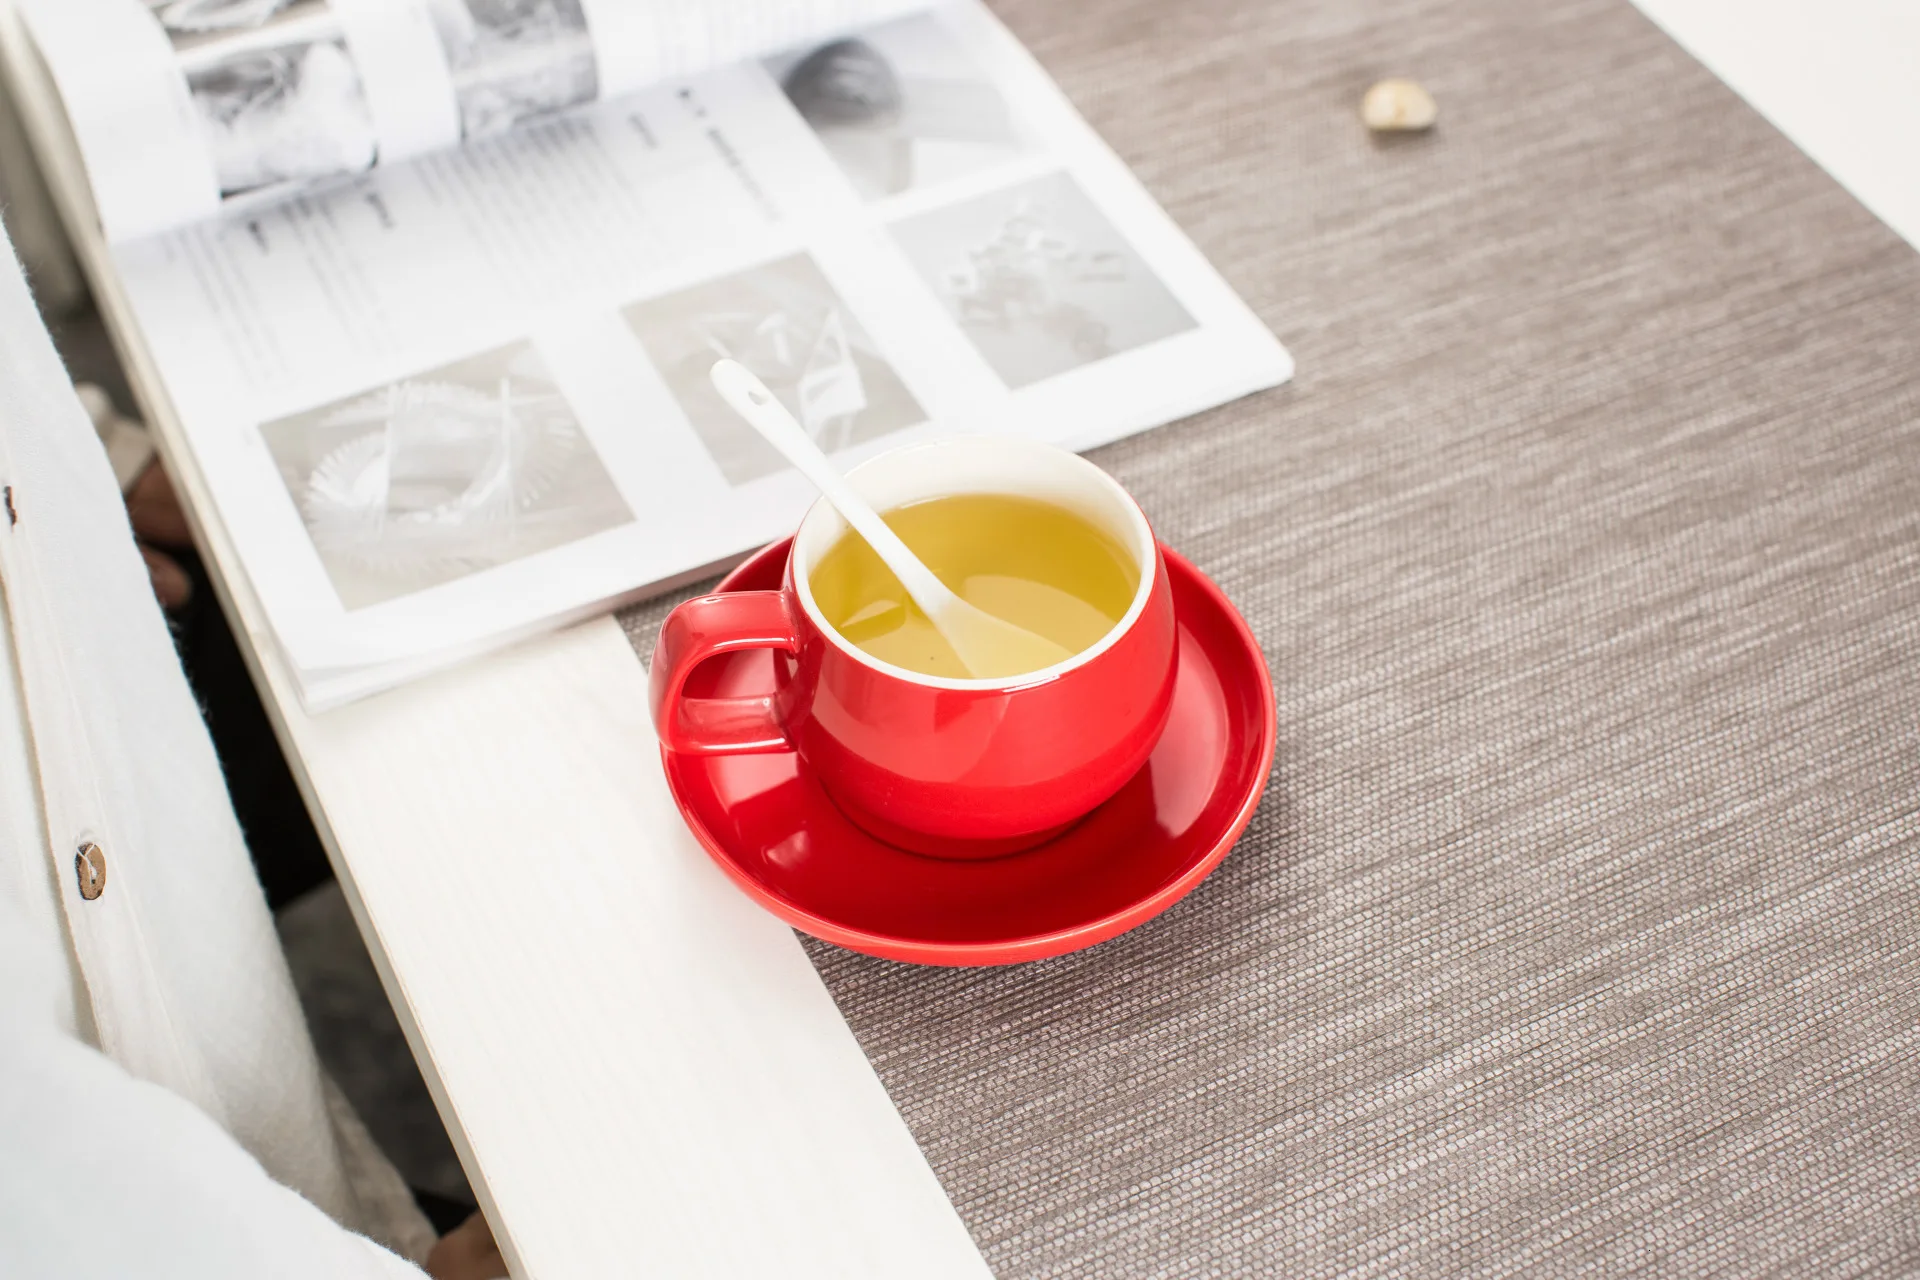 300-400 мл Макарон широкий рот керамическая капучино кофейная кружка чашка с блюдцем наборы простота Европейская плотная цветная чашка для эспрессо